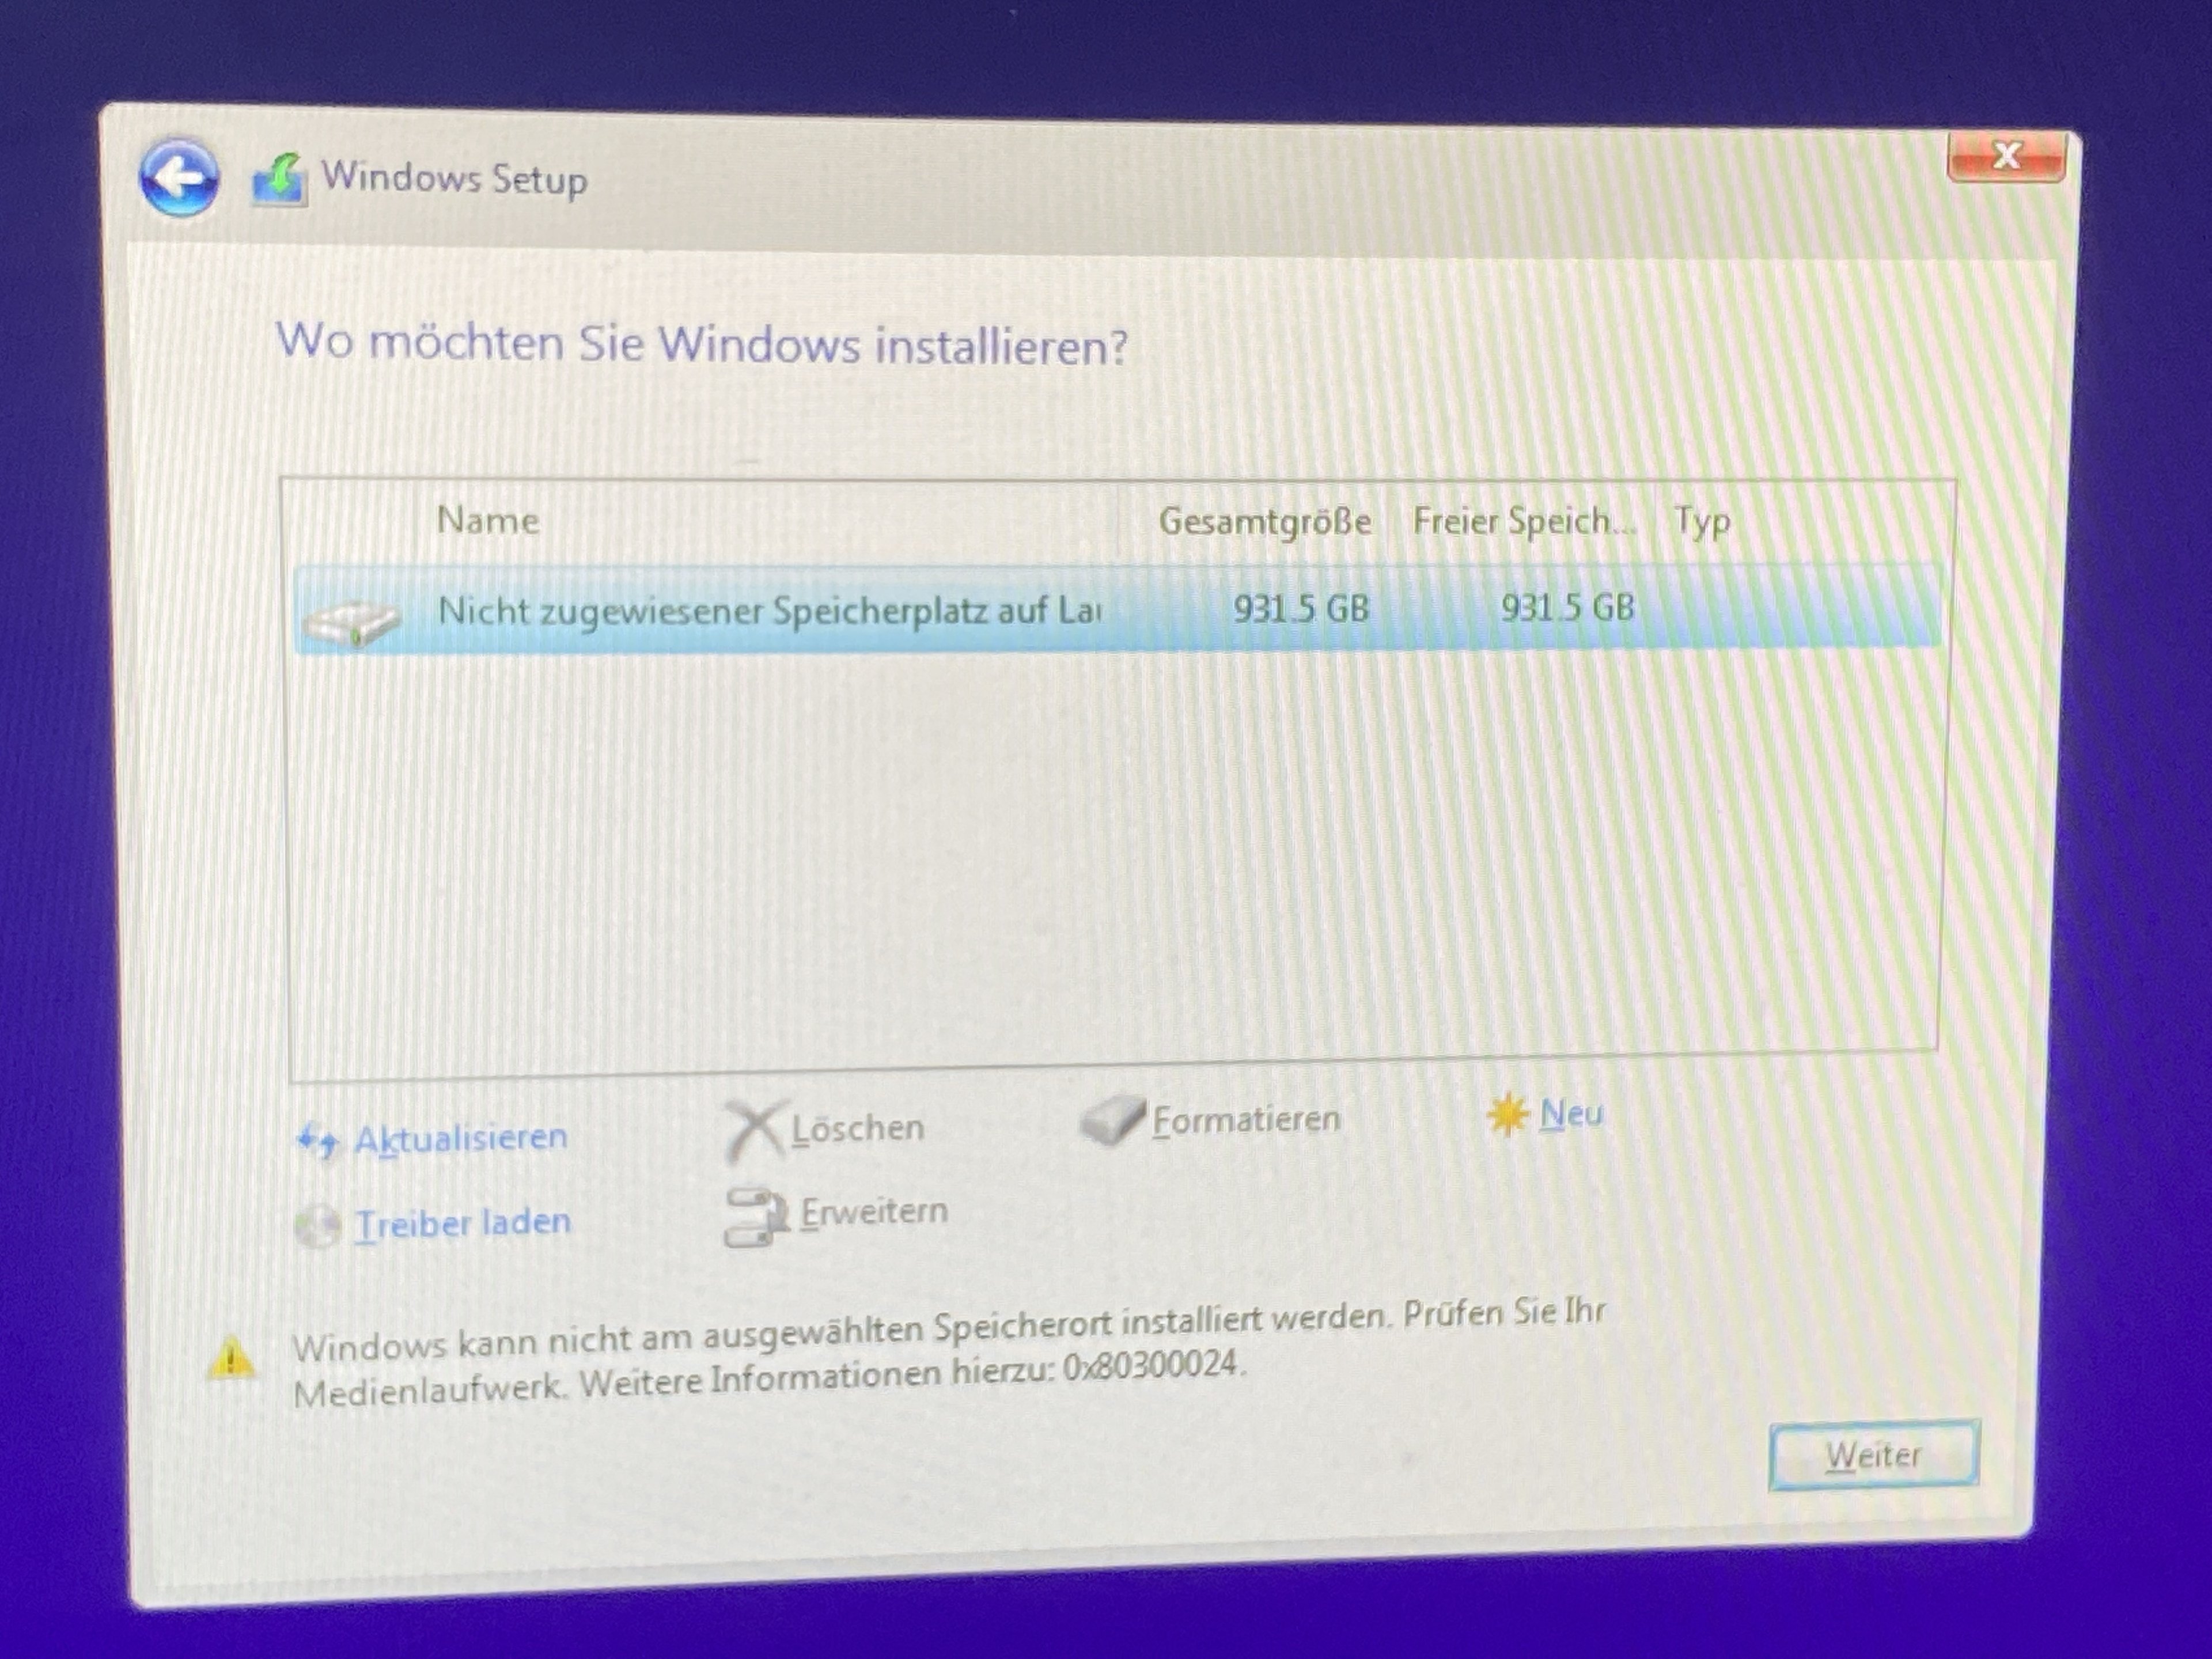 Windows kann nicht am ausgewählten Speicherort installiert werden.